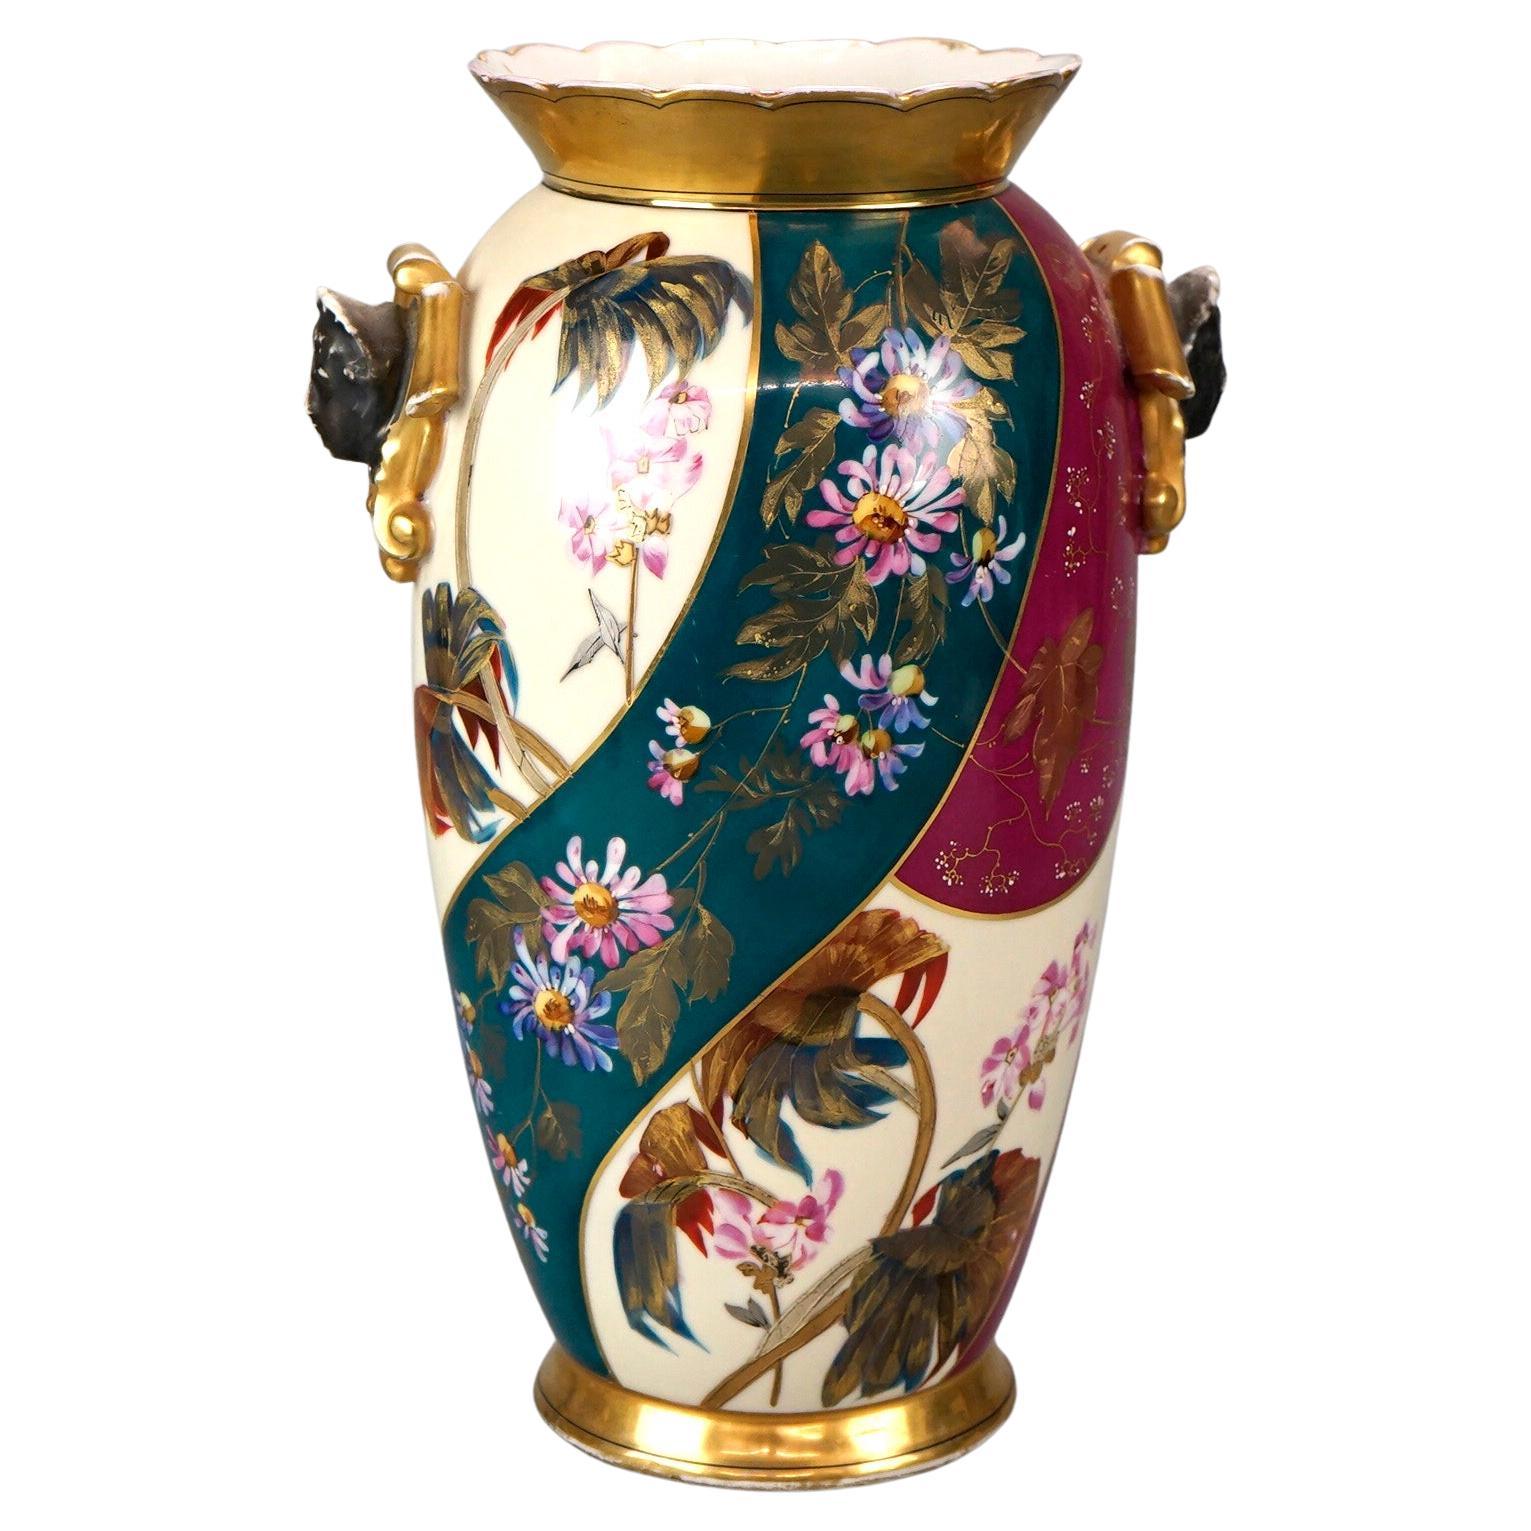 Vase français ancien en porcelaine de Paris, peint à la main, à motifs floraux et figuratifs, XIXe siècle